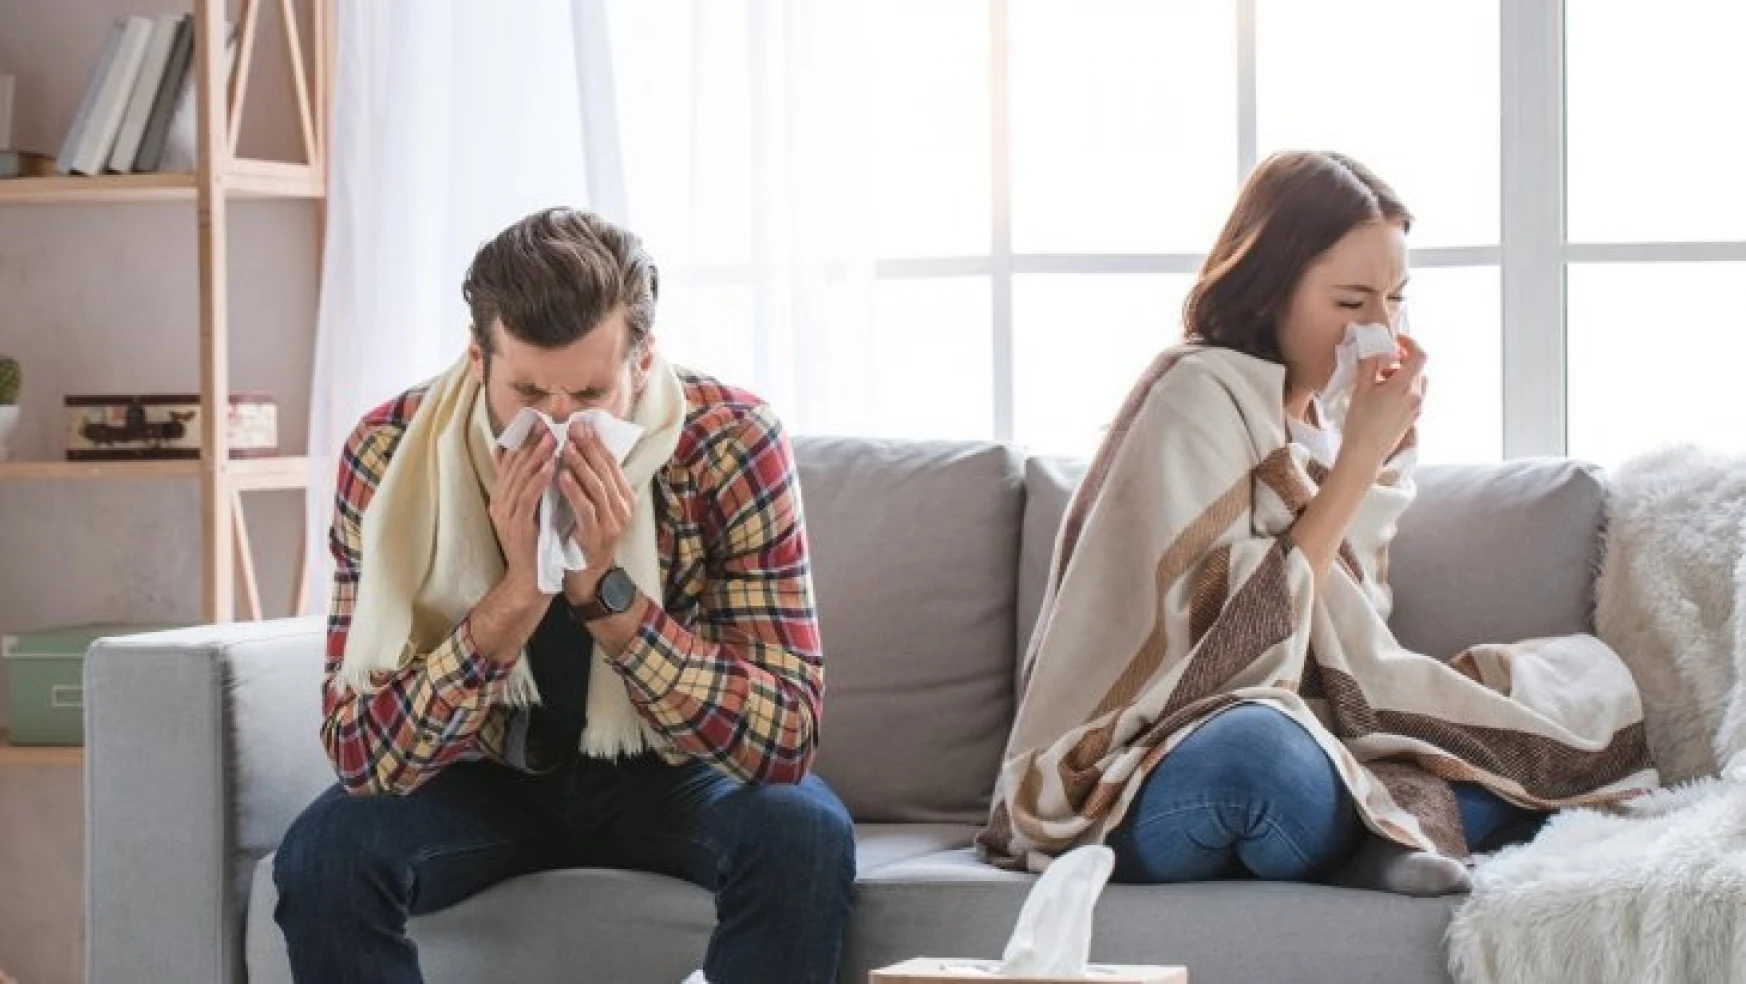 Grip ölüme neden olabilir